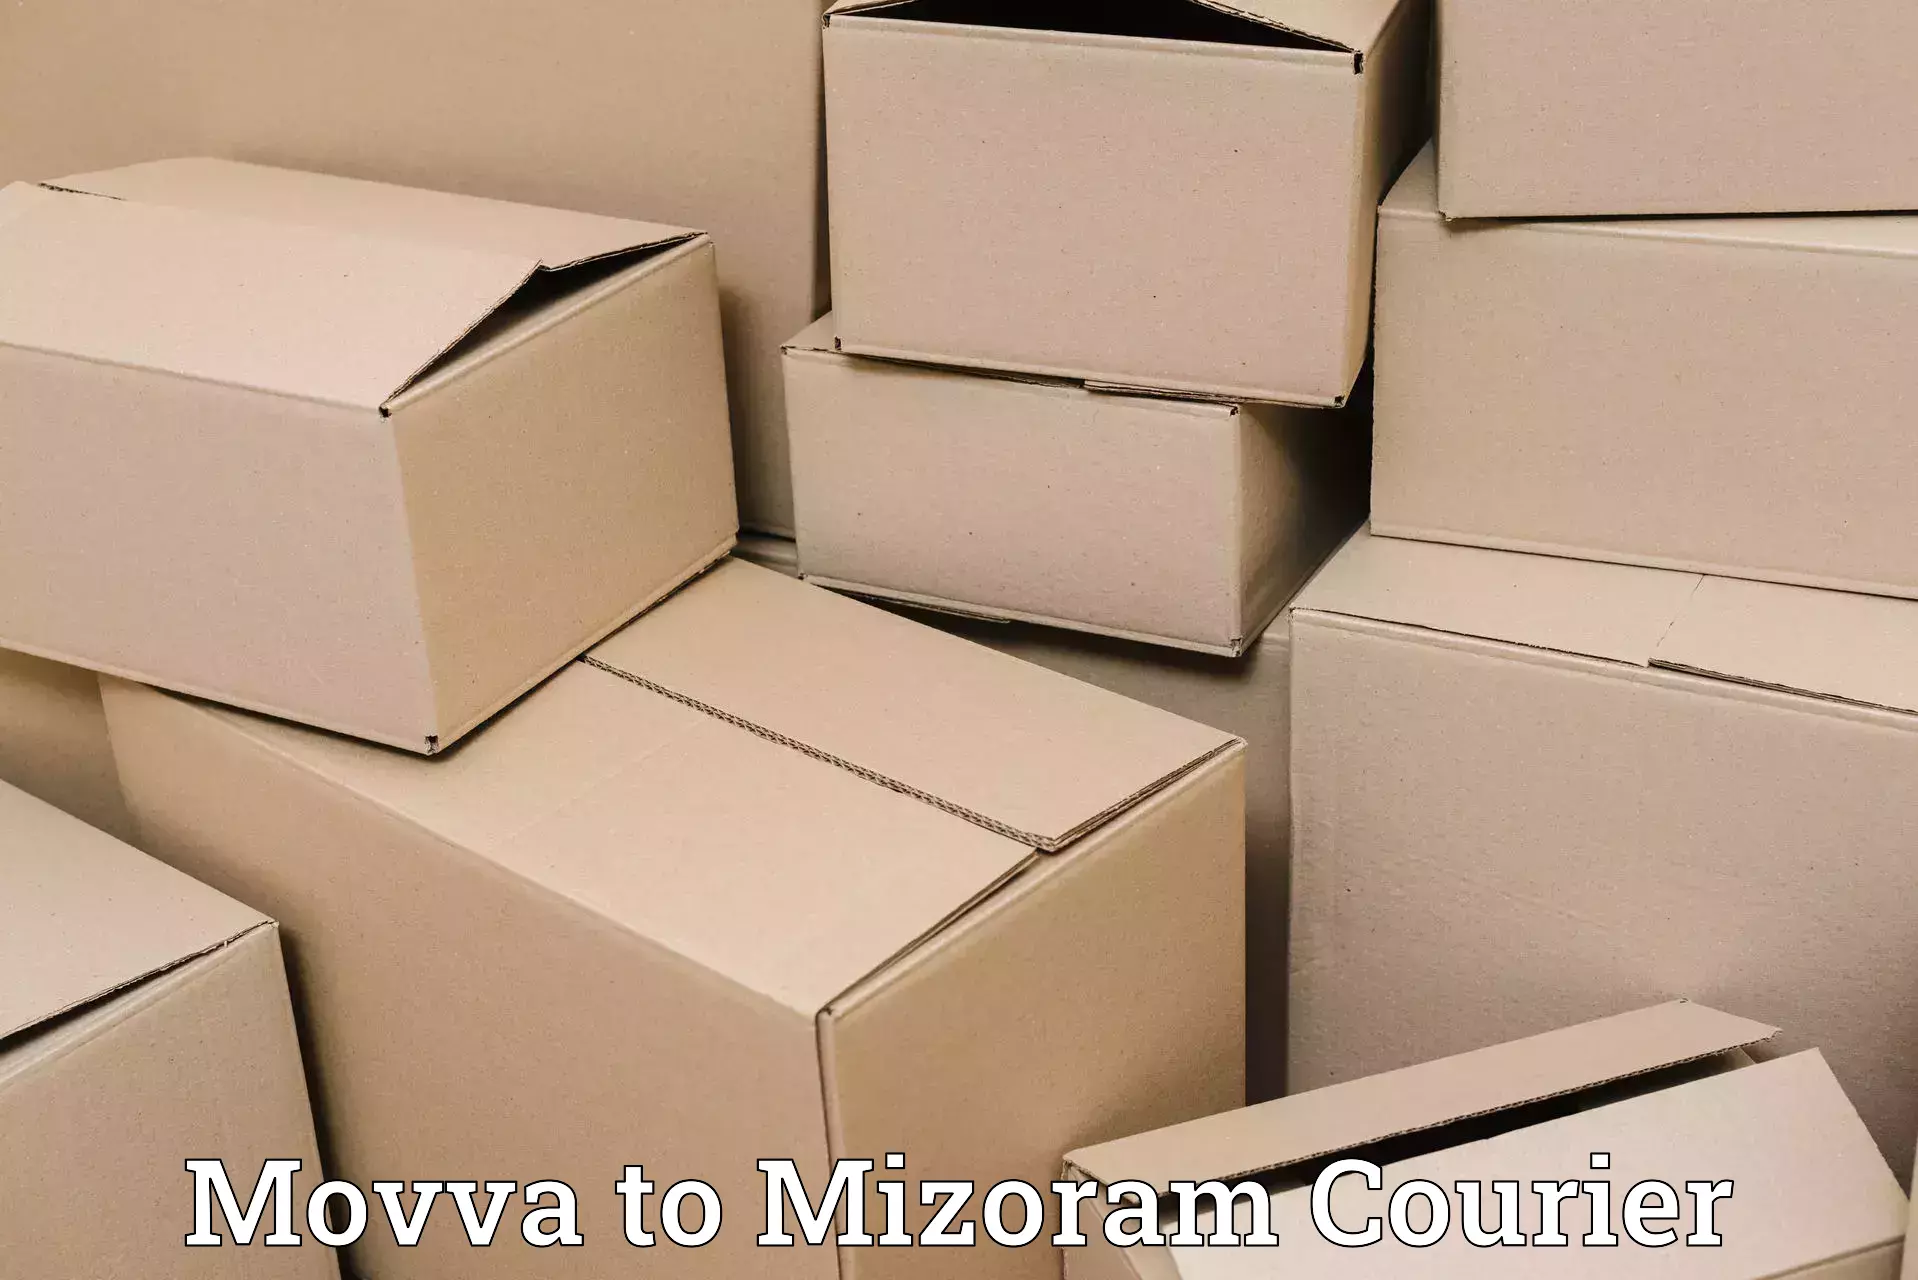 International courier rates Movva to Khawzawl